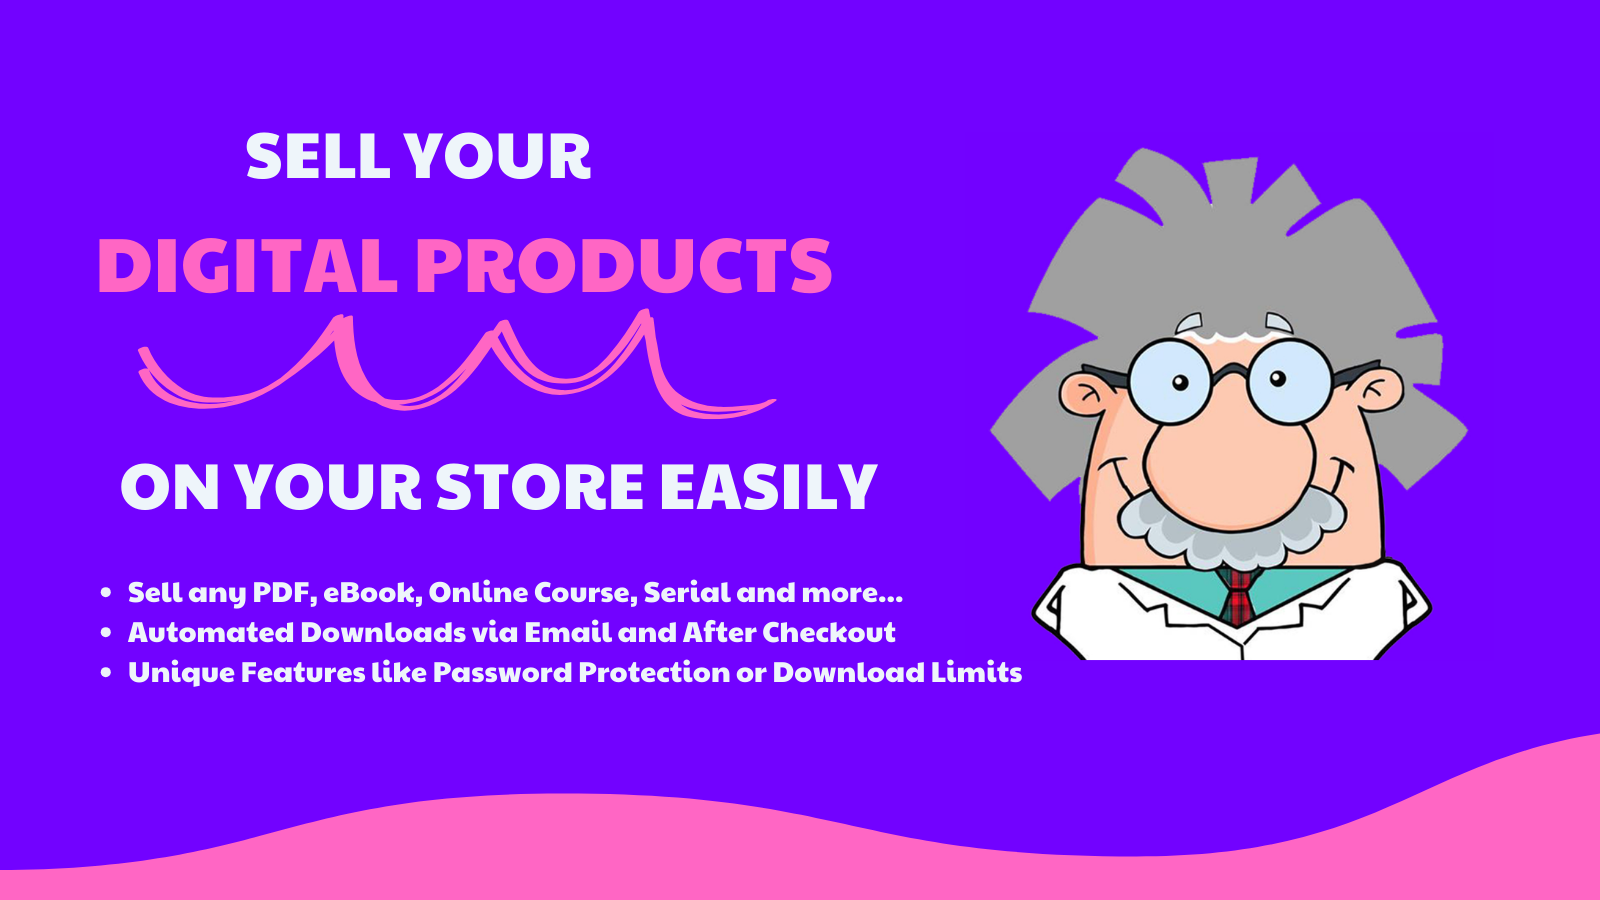 Sælg dine digitale produkter i din butik nemt